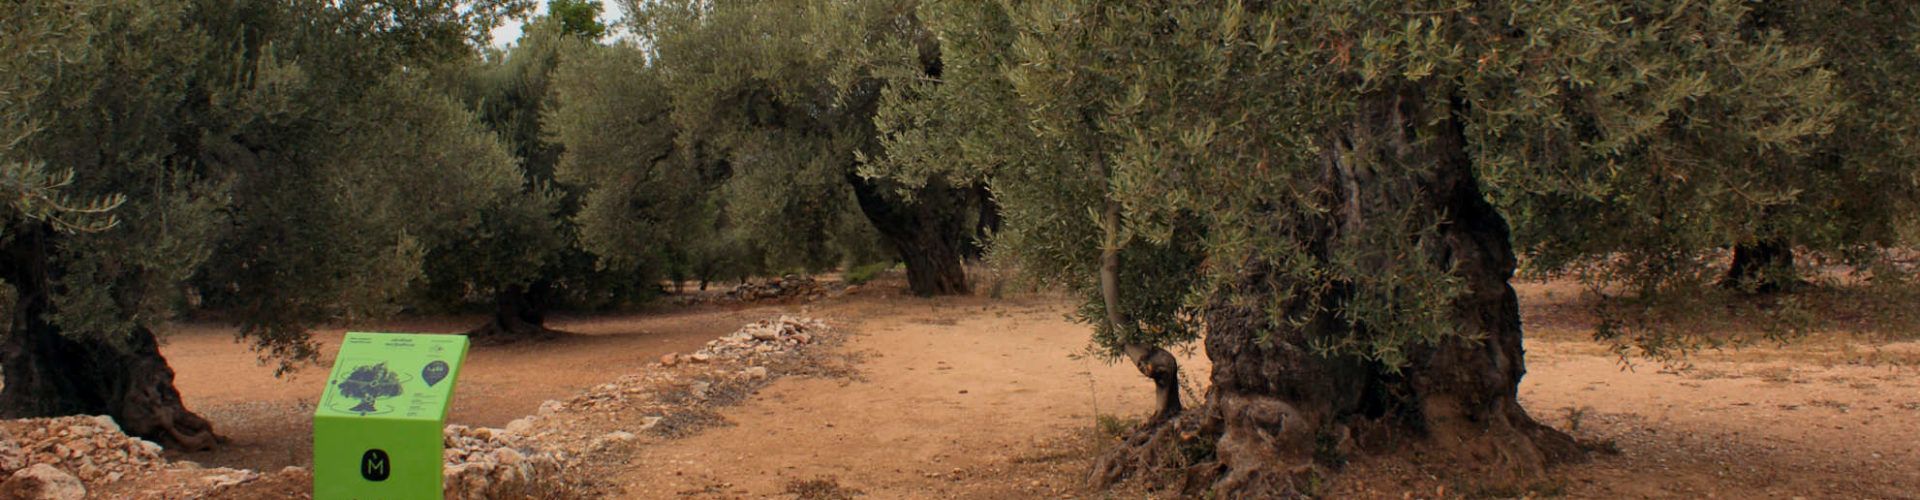 Les oliveres monumentals s’haurien de potegir el 2021